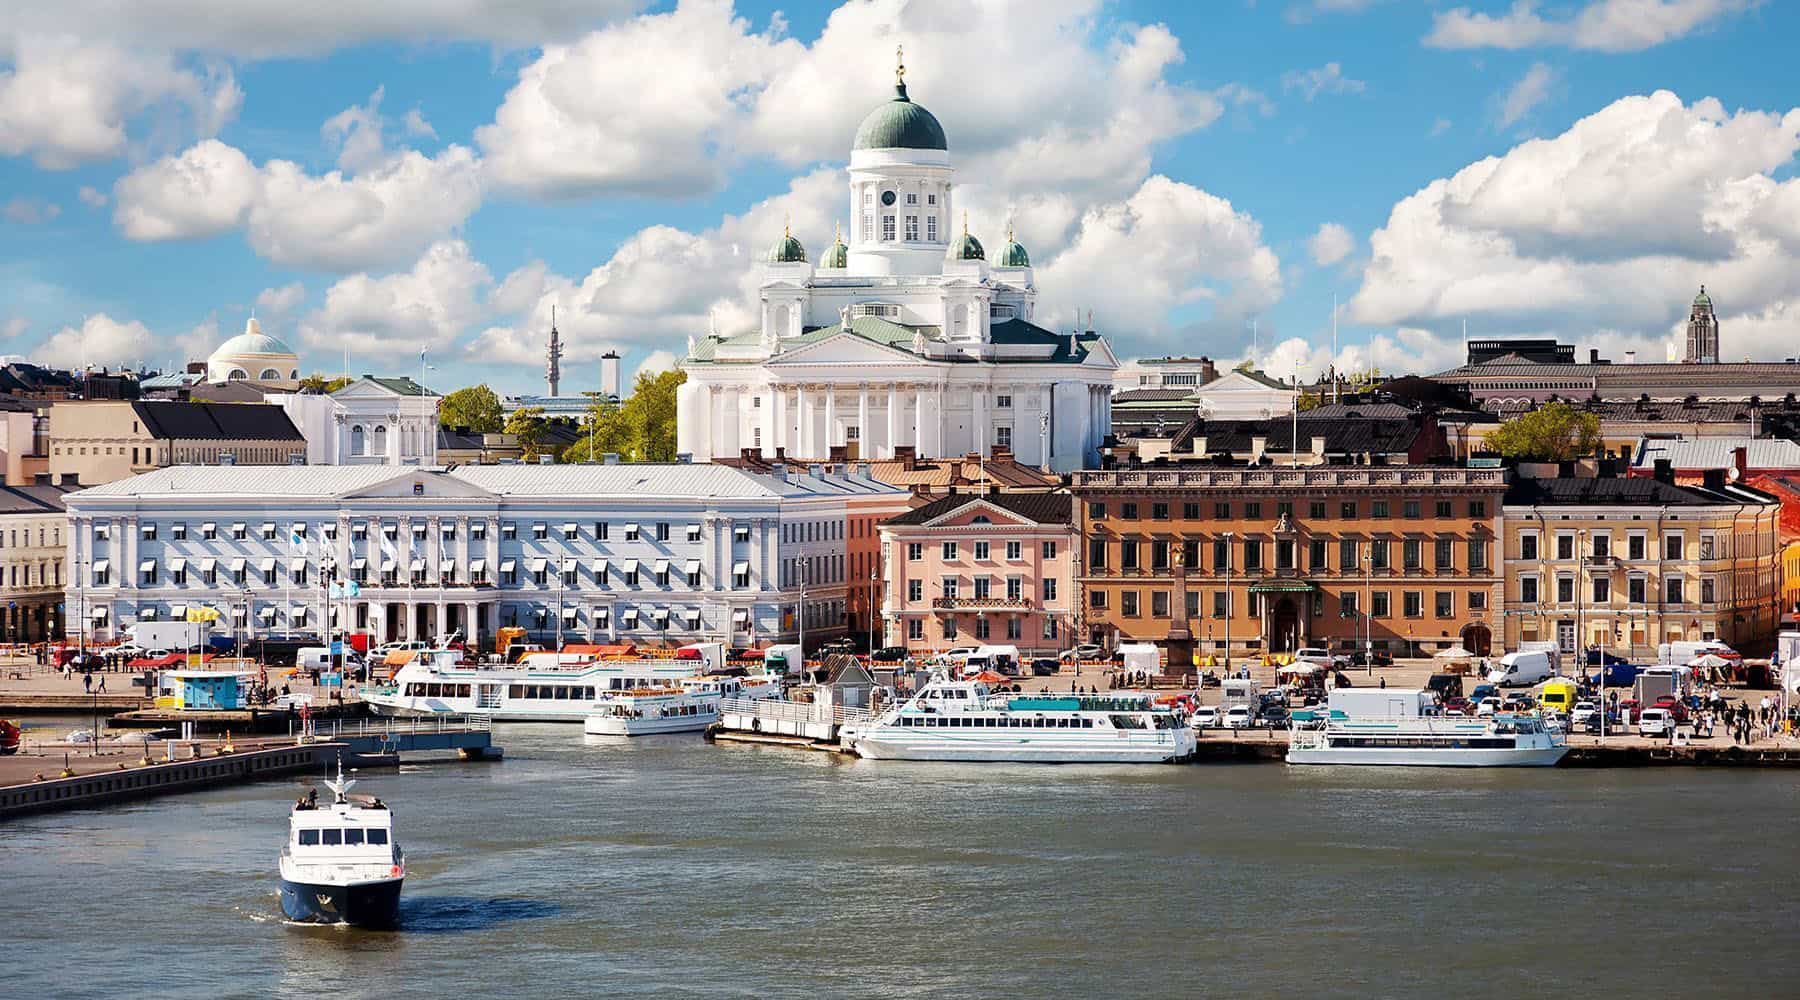 Vé máy bay đi Helsinki (HEL) giá rẻ tốt nhất - Lịch bay 2022